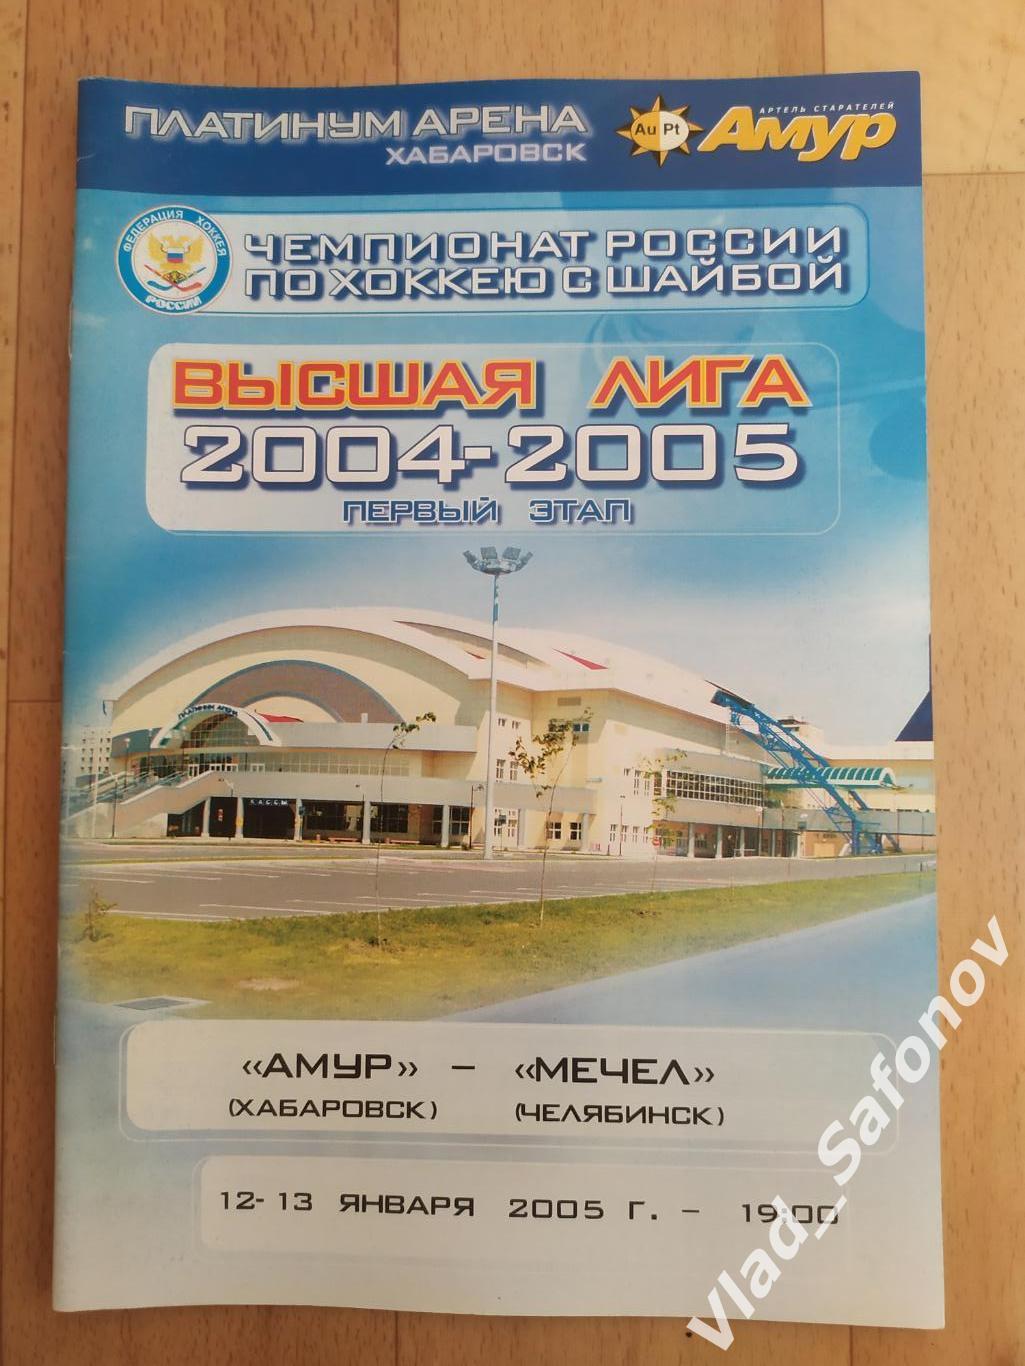 Амур(Хабаровск) - Мечел(Челябинск). Высшая лига. 12-13/01/2005